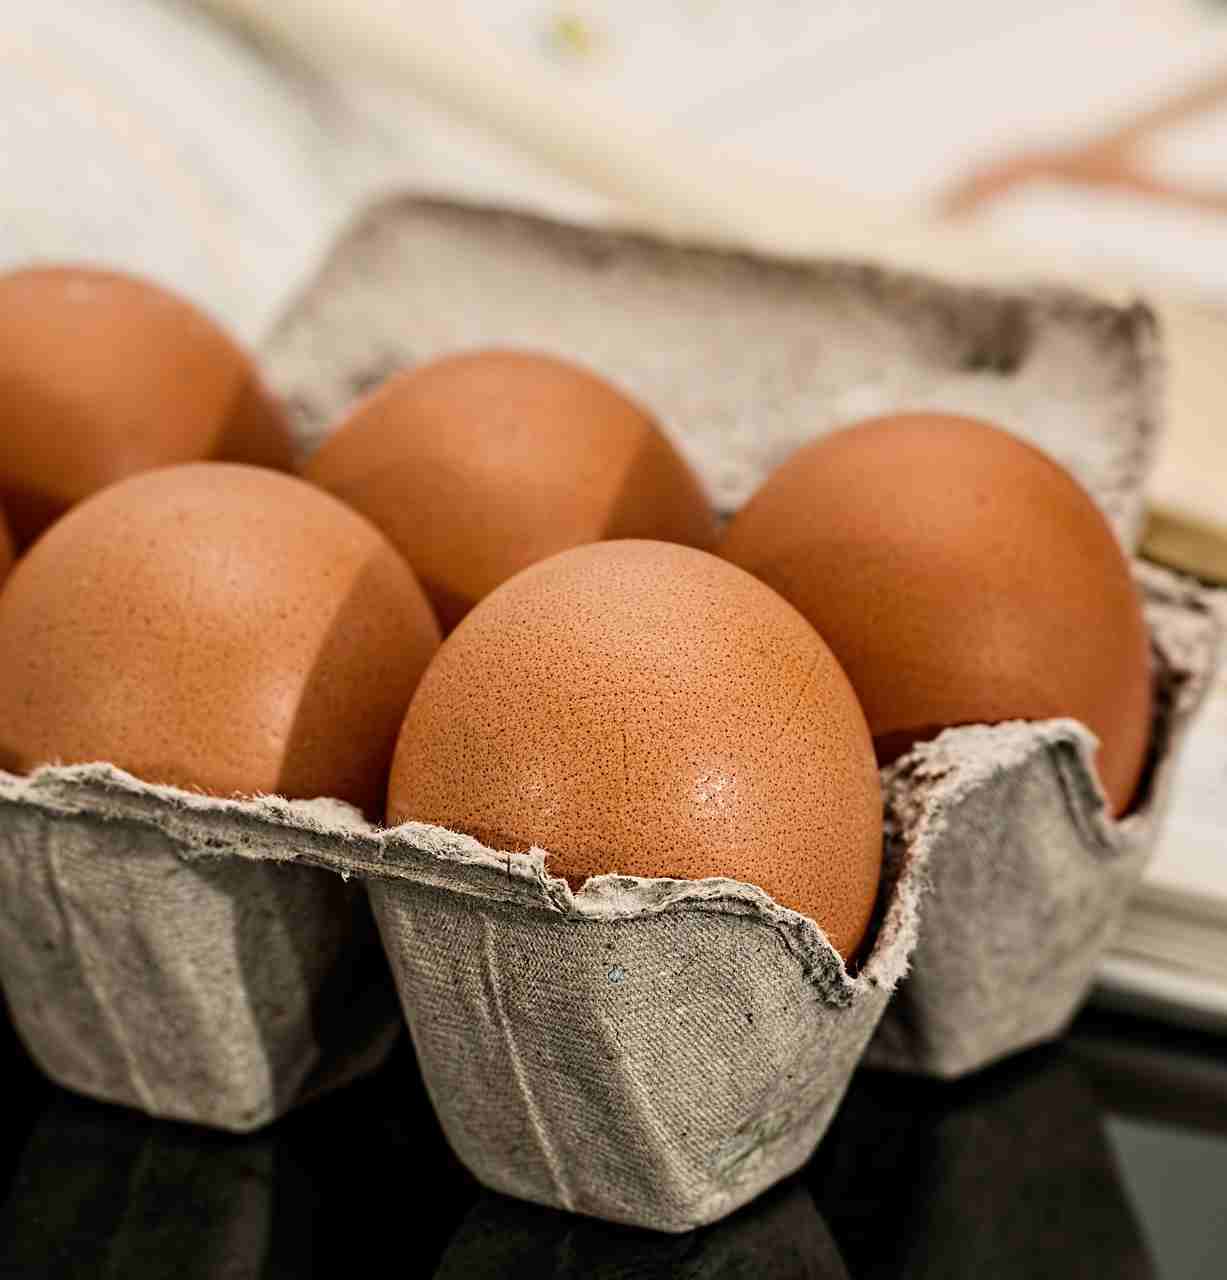 Consumul de ouă nu creşte riscul de boli cardiovasculare: STUDIU